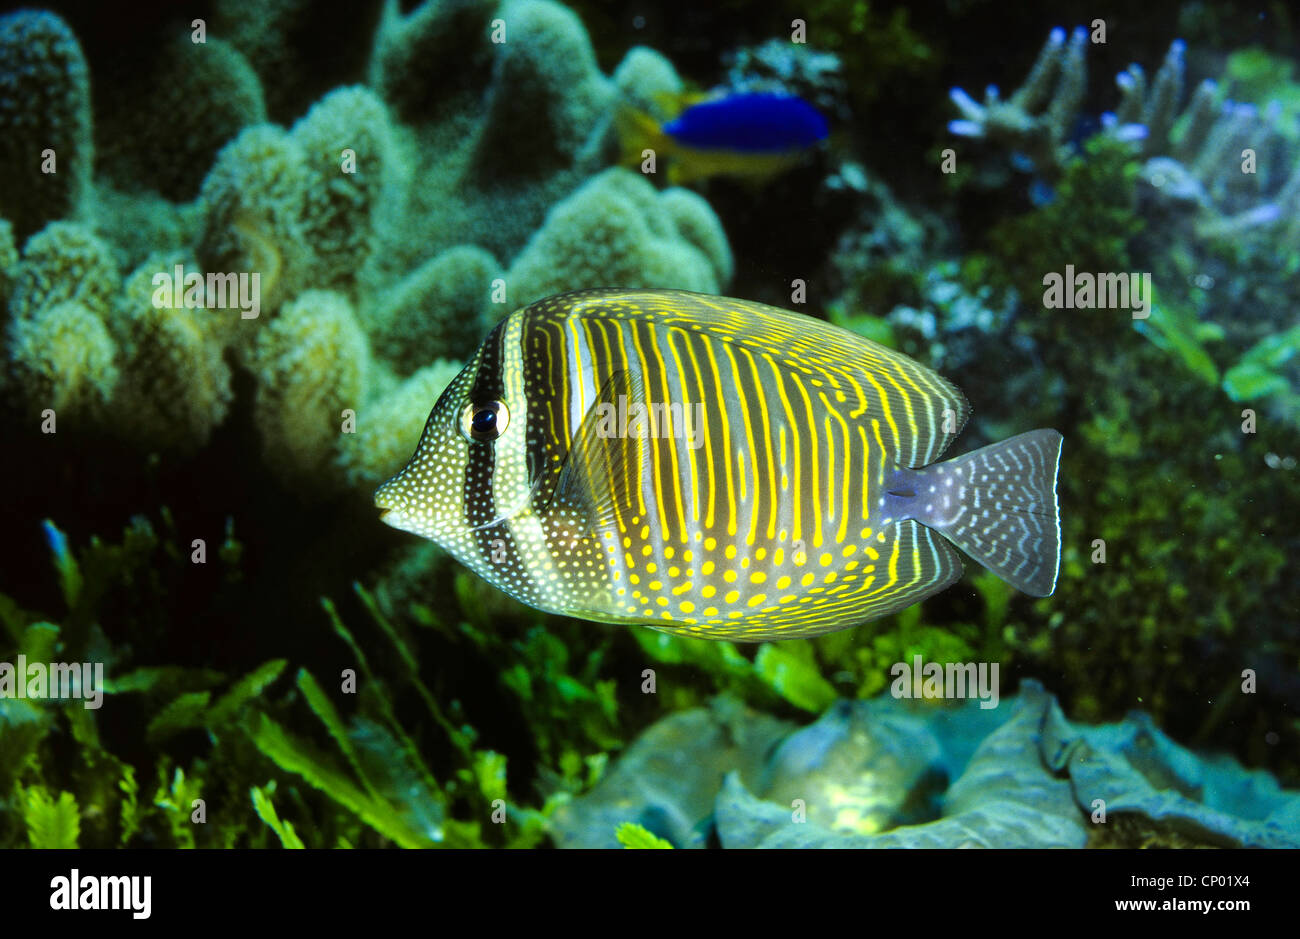 Desjardini Sailfin Tang, Dejardin's Sailfin Tang, Red Sea Sailfin Tang, Indian Sailfin Surgeonfish (Zebrasoma desjardinii, Zebrasoma desjardini) Stock Photo